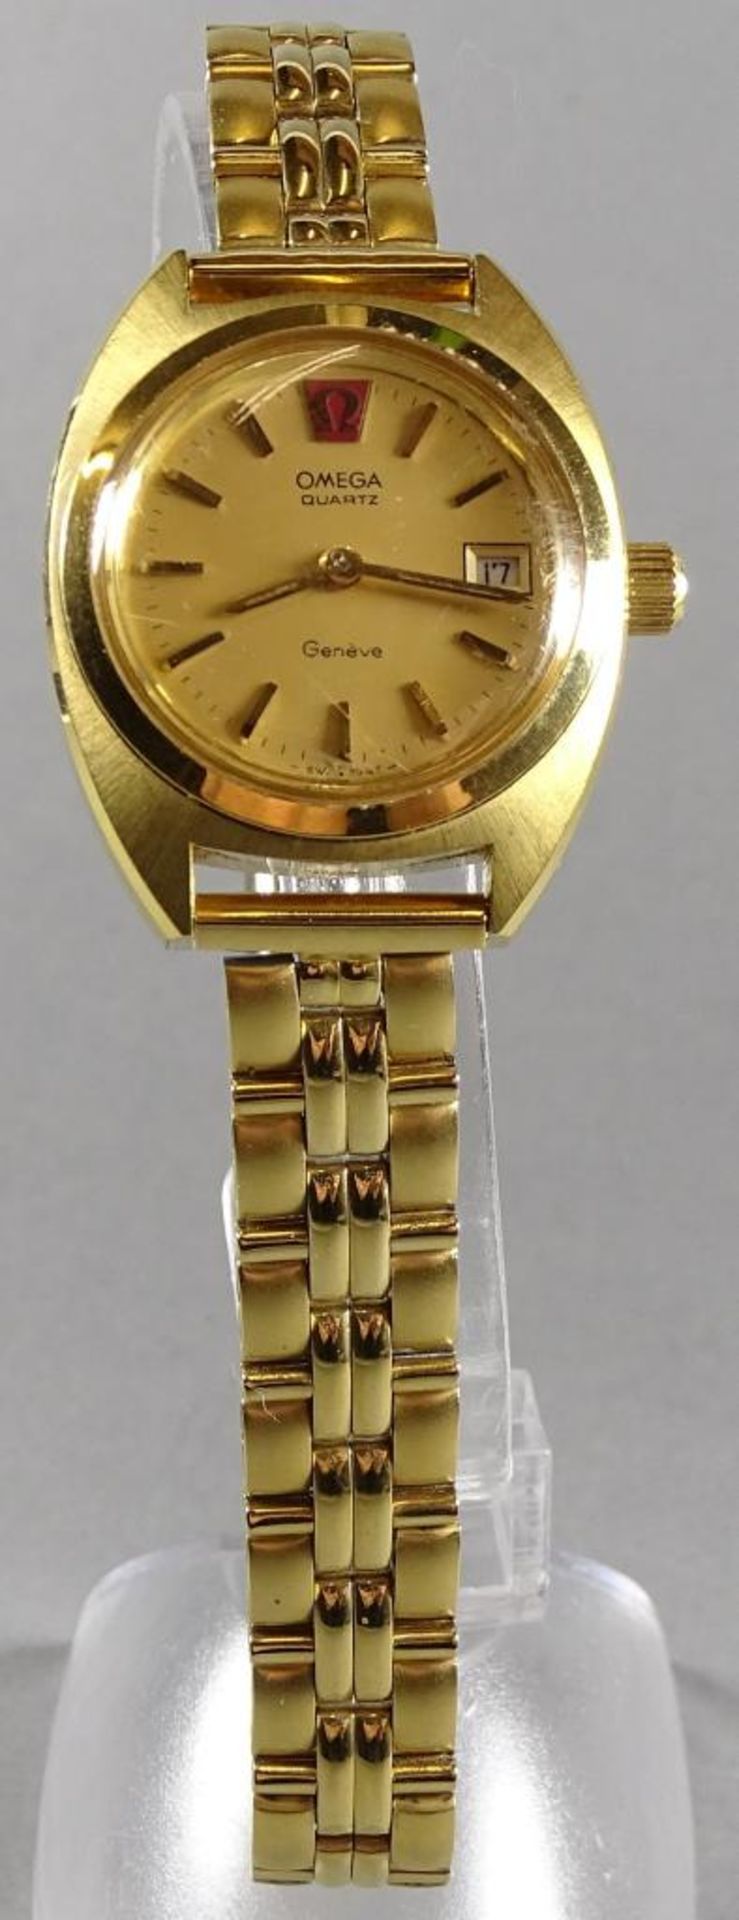 Damen Armbanduhr"Omega" Geneve,Quartz,Werk steht,Uhrzeiteinstellung nicht Funktionstüchtig,